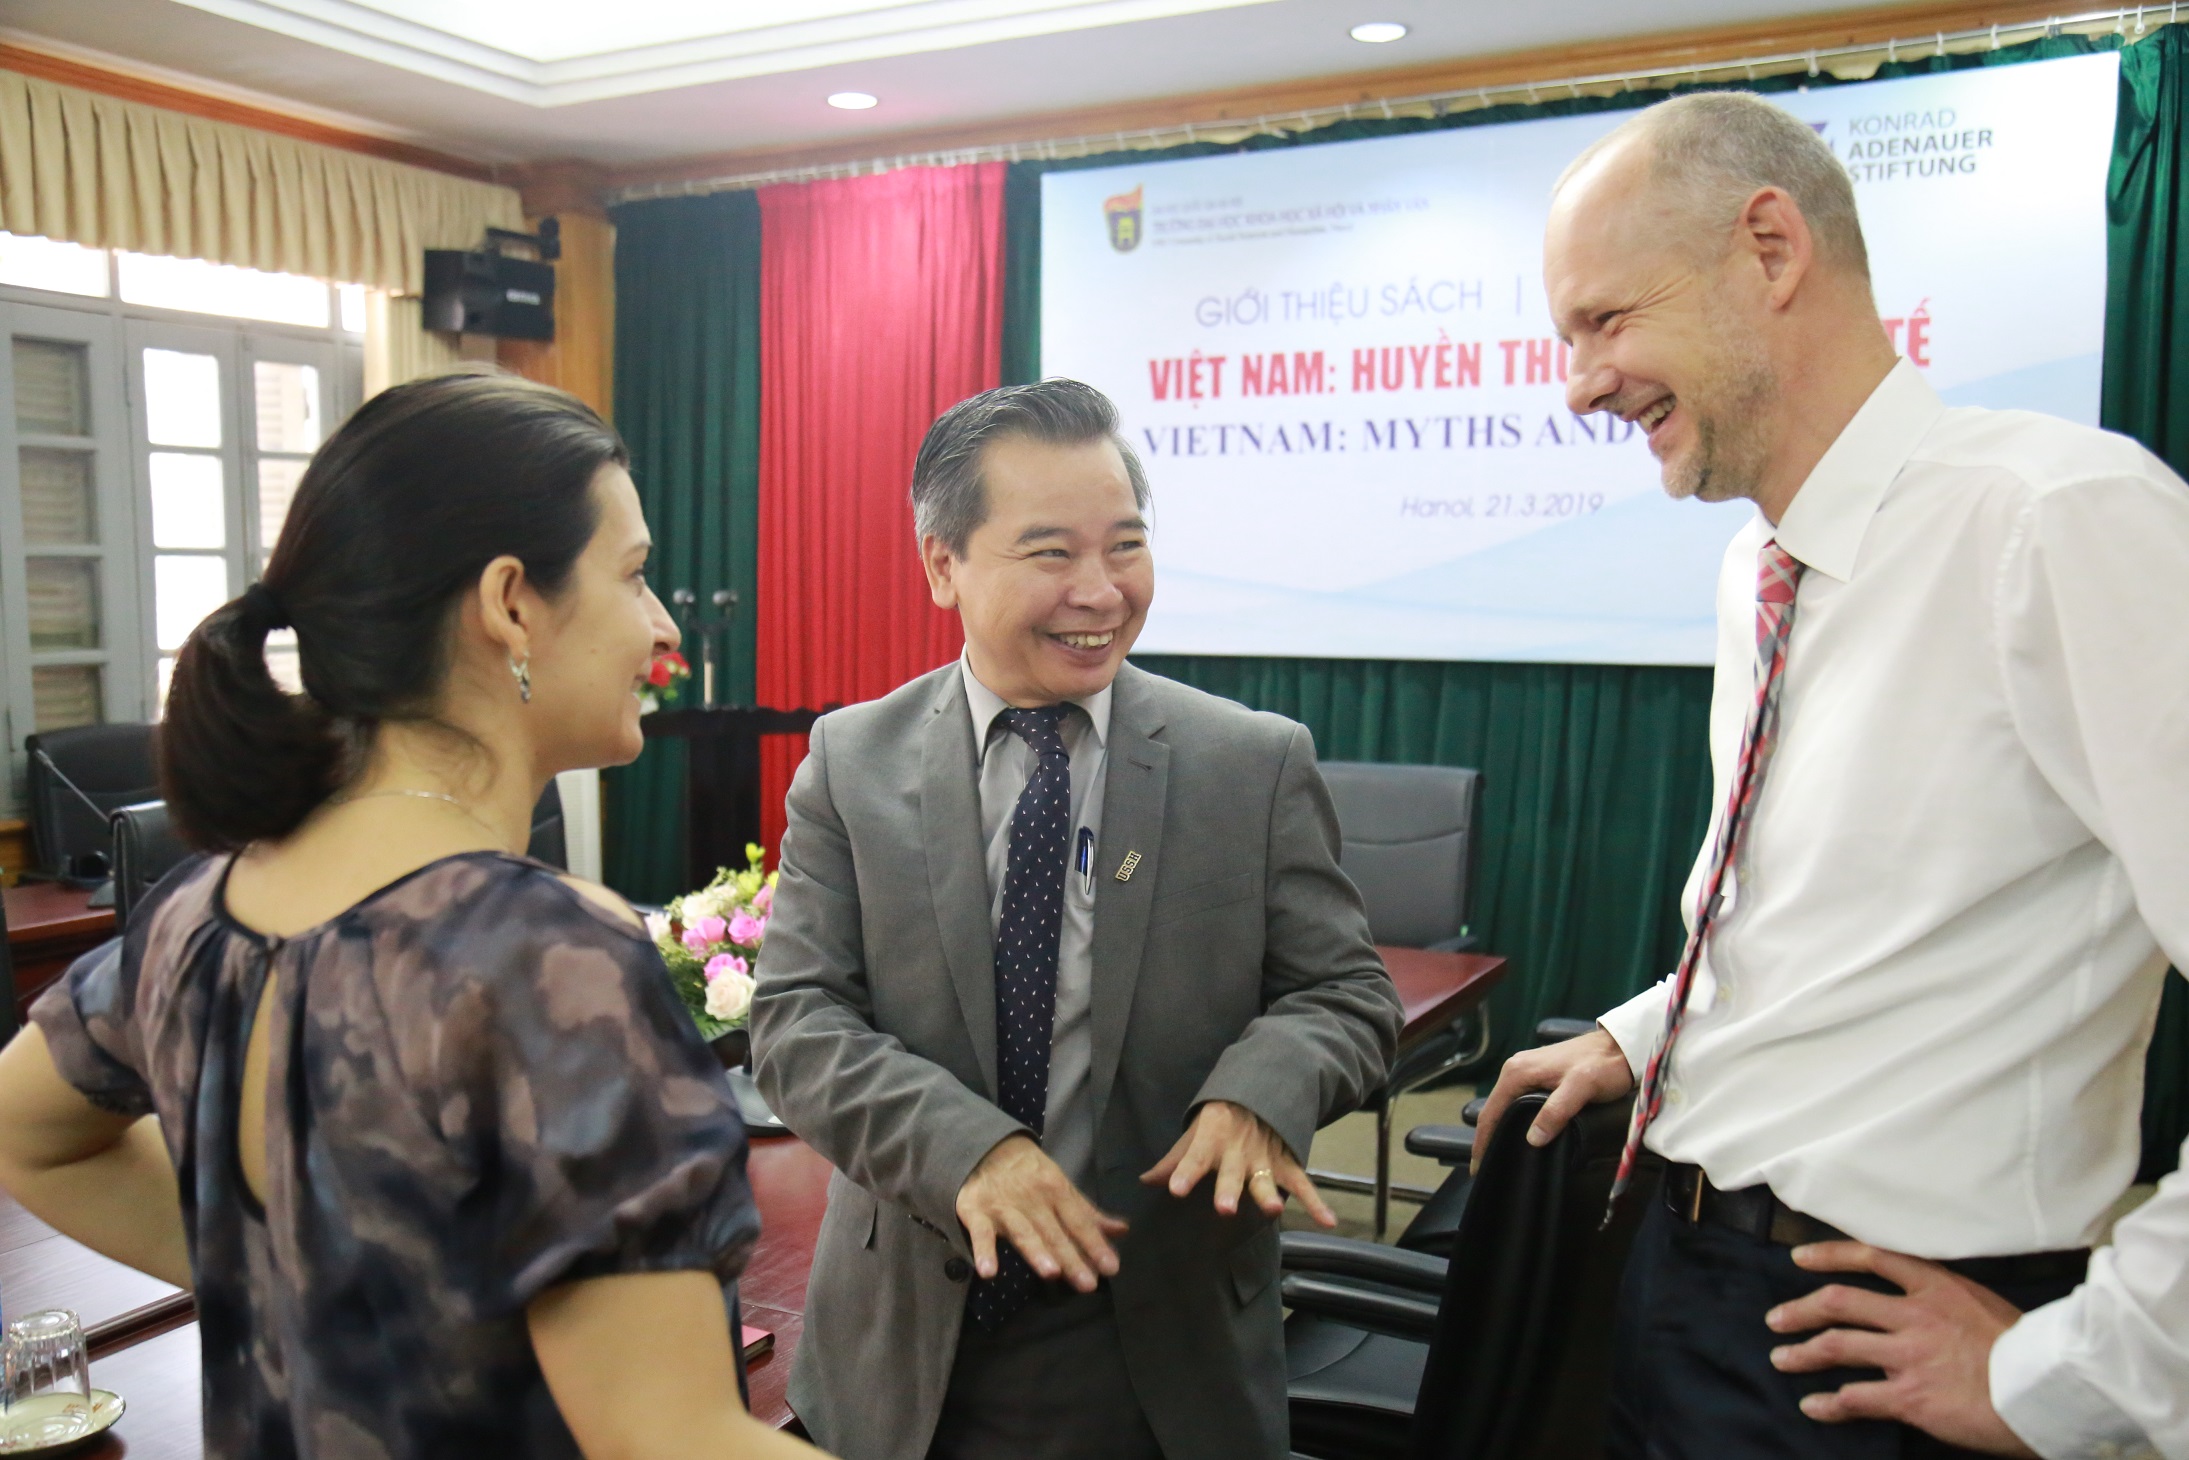 Nghiên cứu huyền thoại để hiểu hơn về xã hội Việt Nam